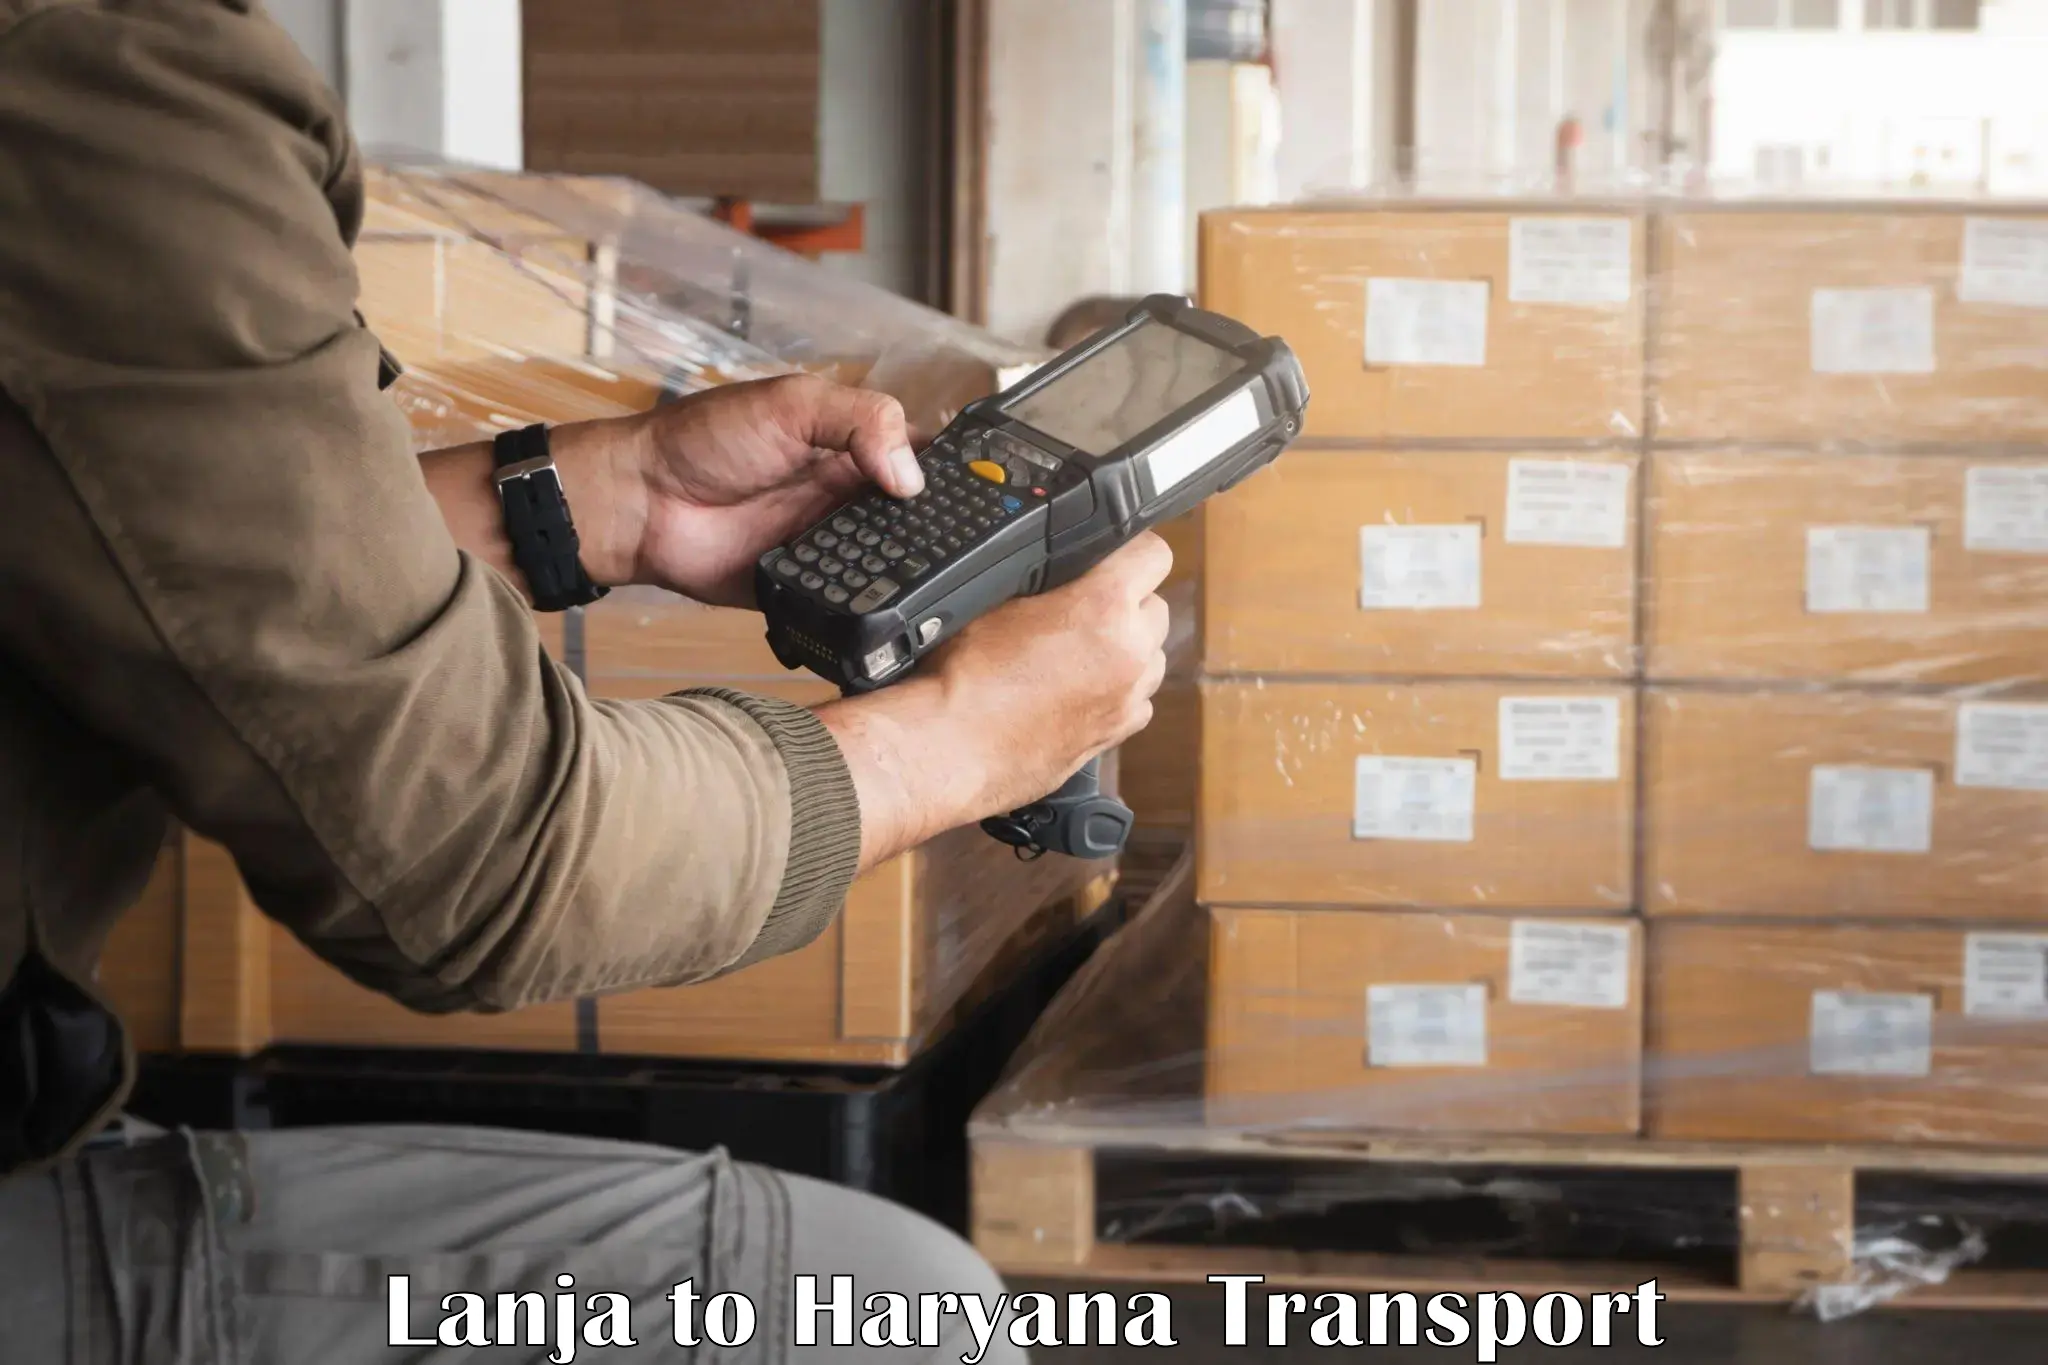 Pick up transport service Lanja to Odhan